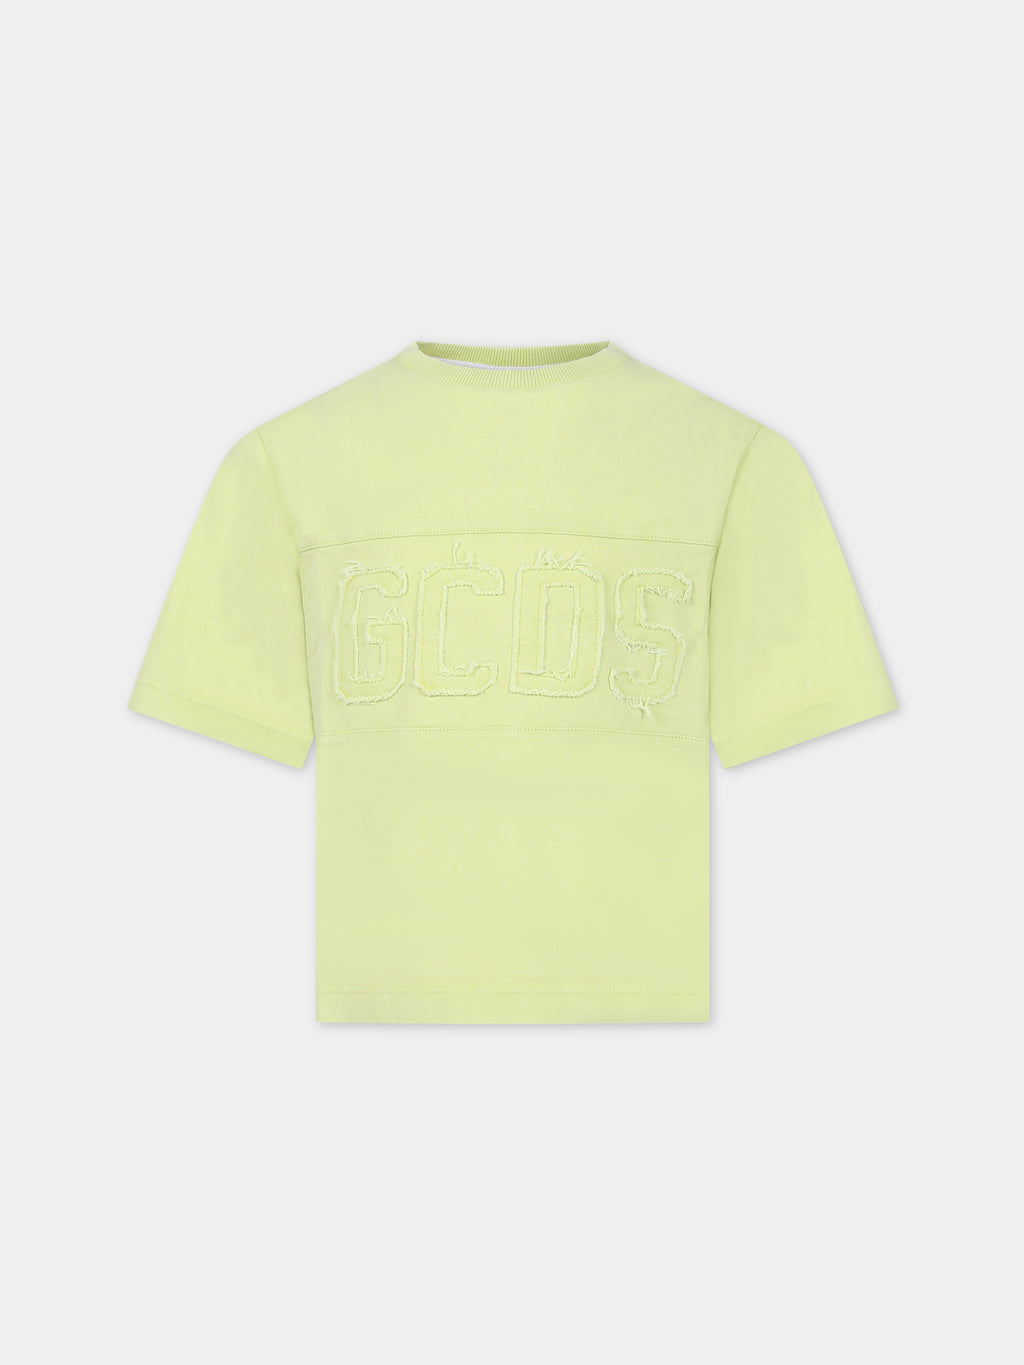 T-shirt gialla per bambini con logo